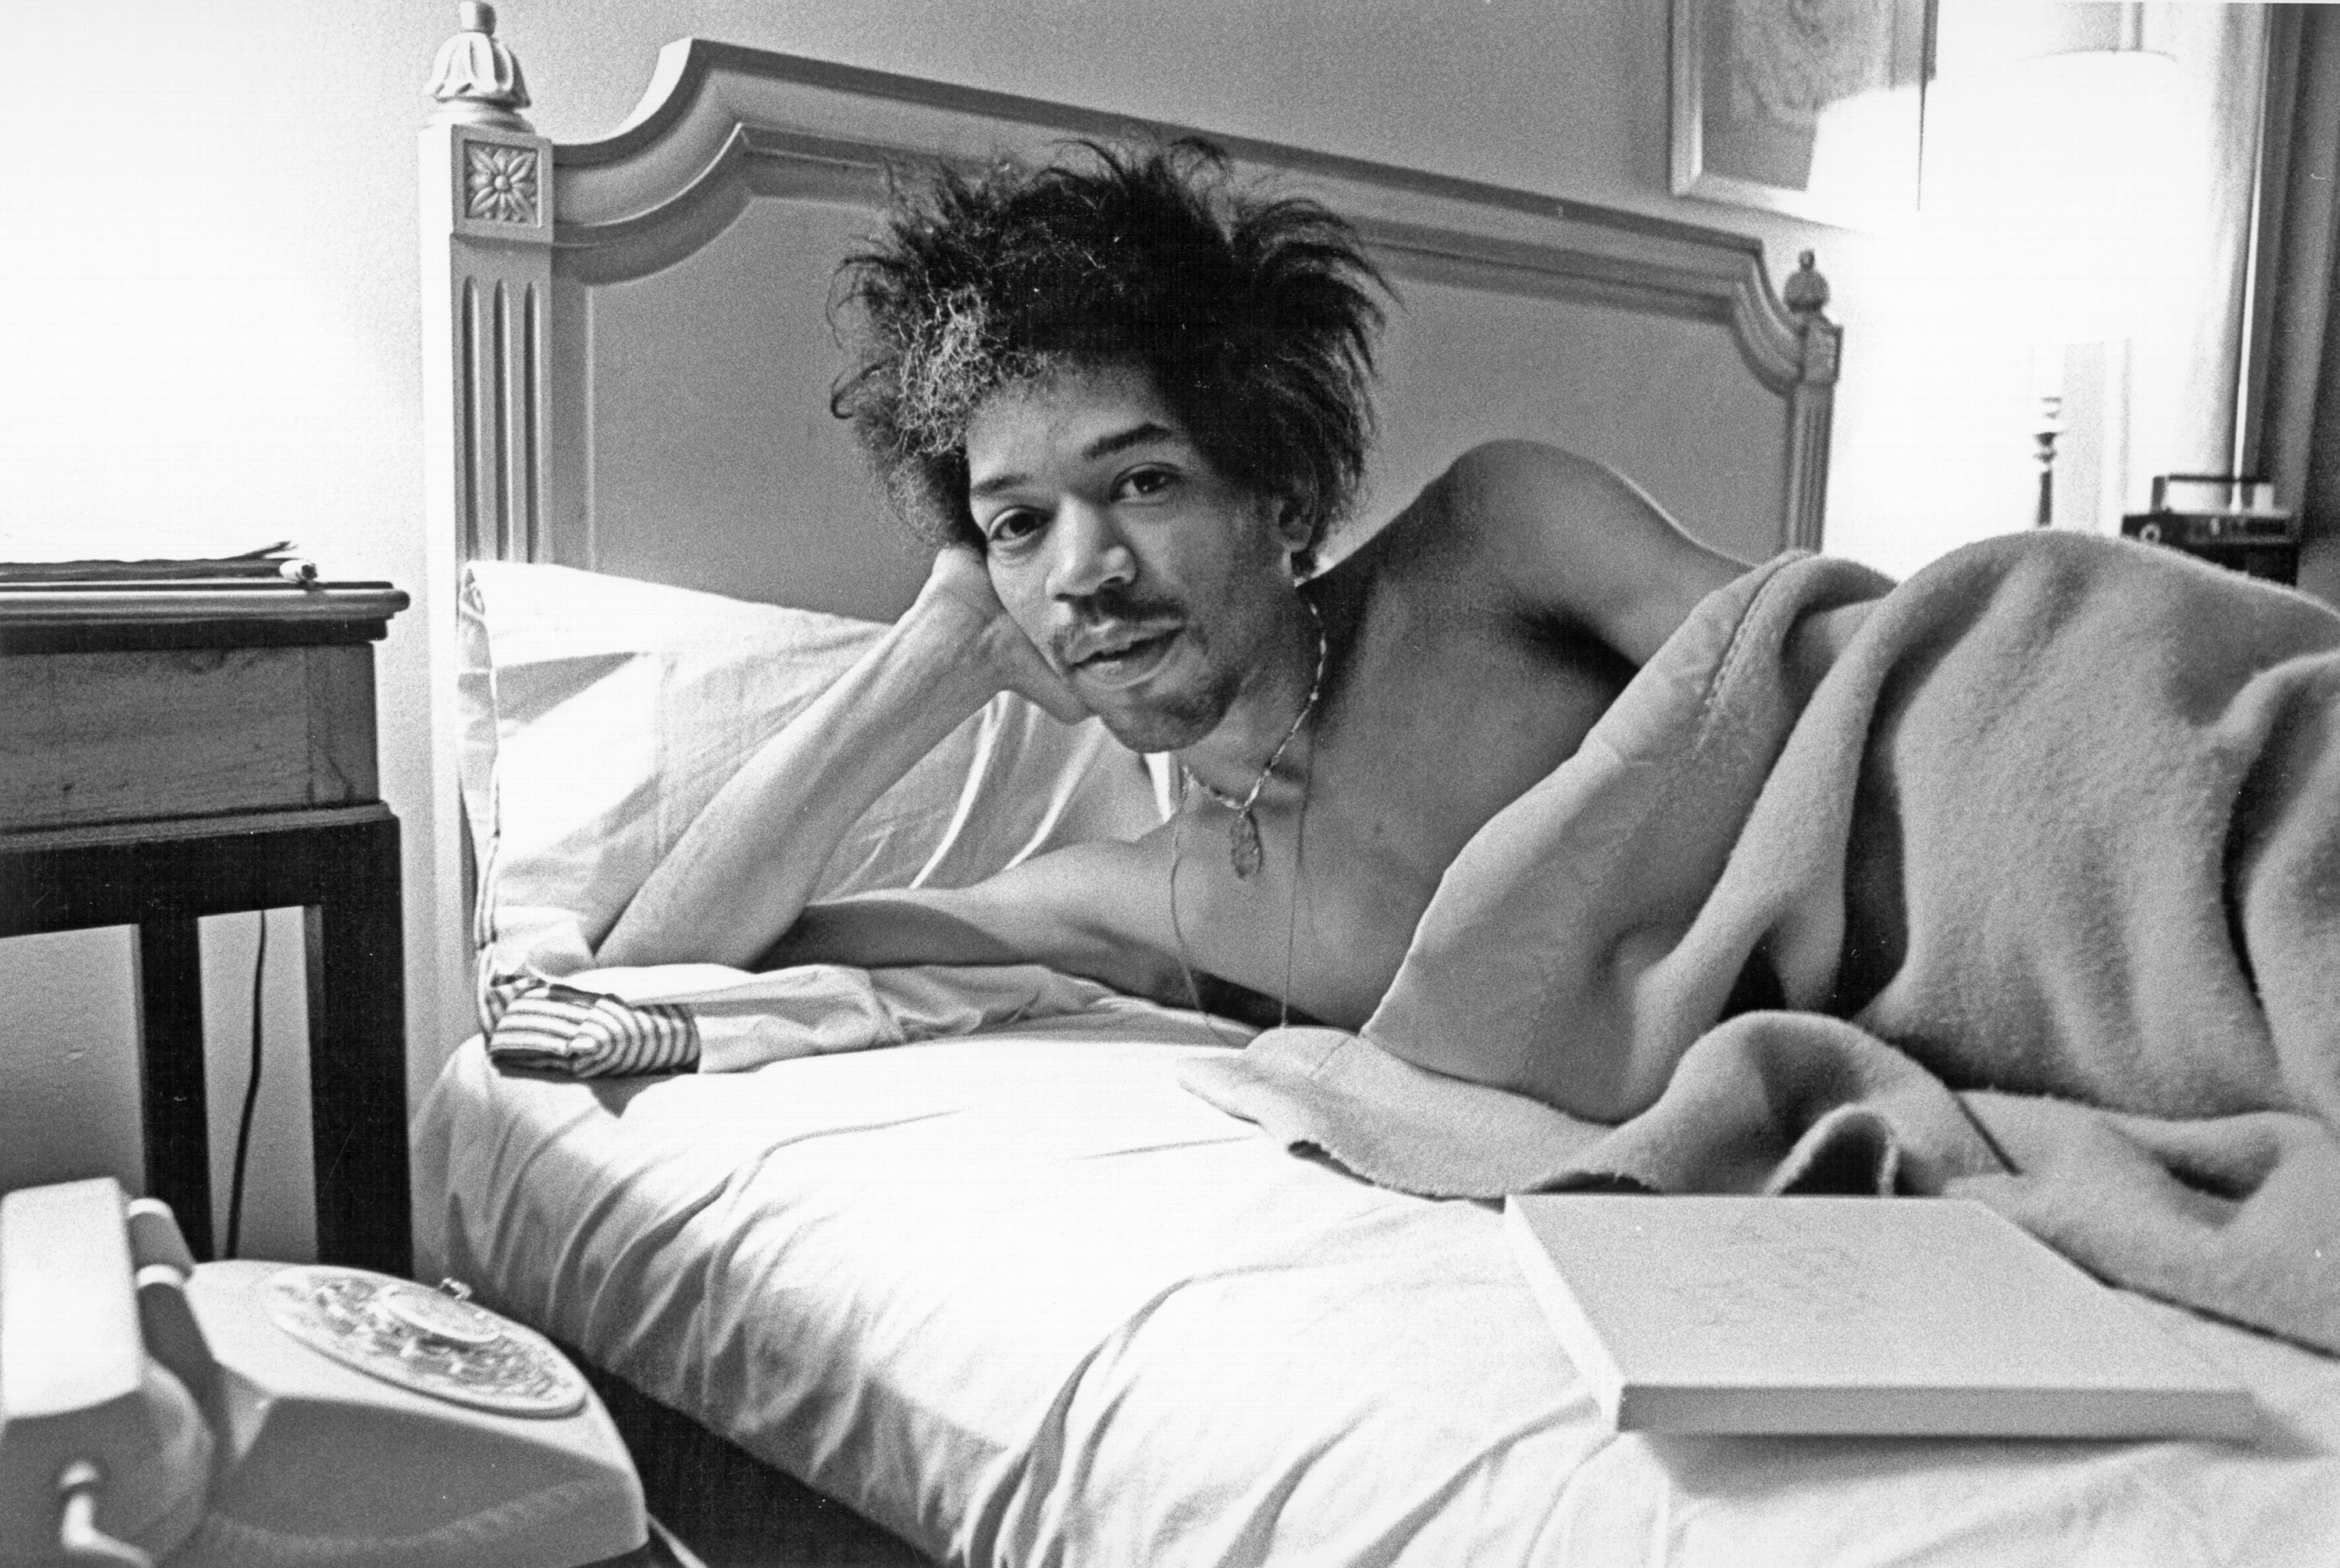 Jimi Hendrix in bed.